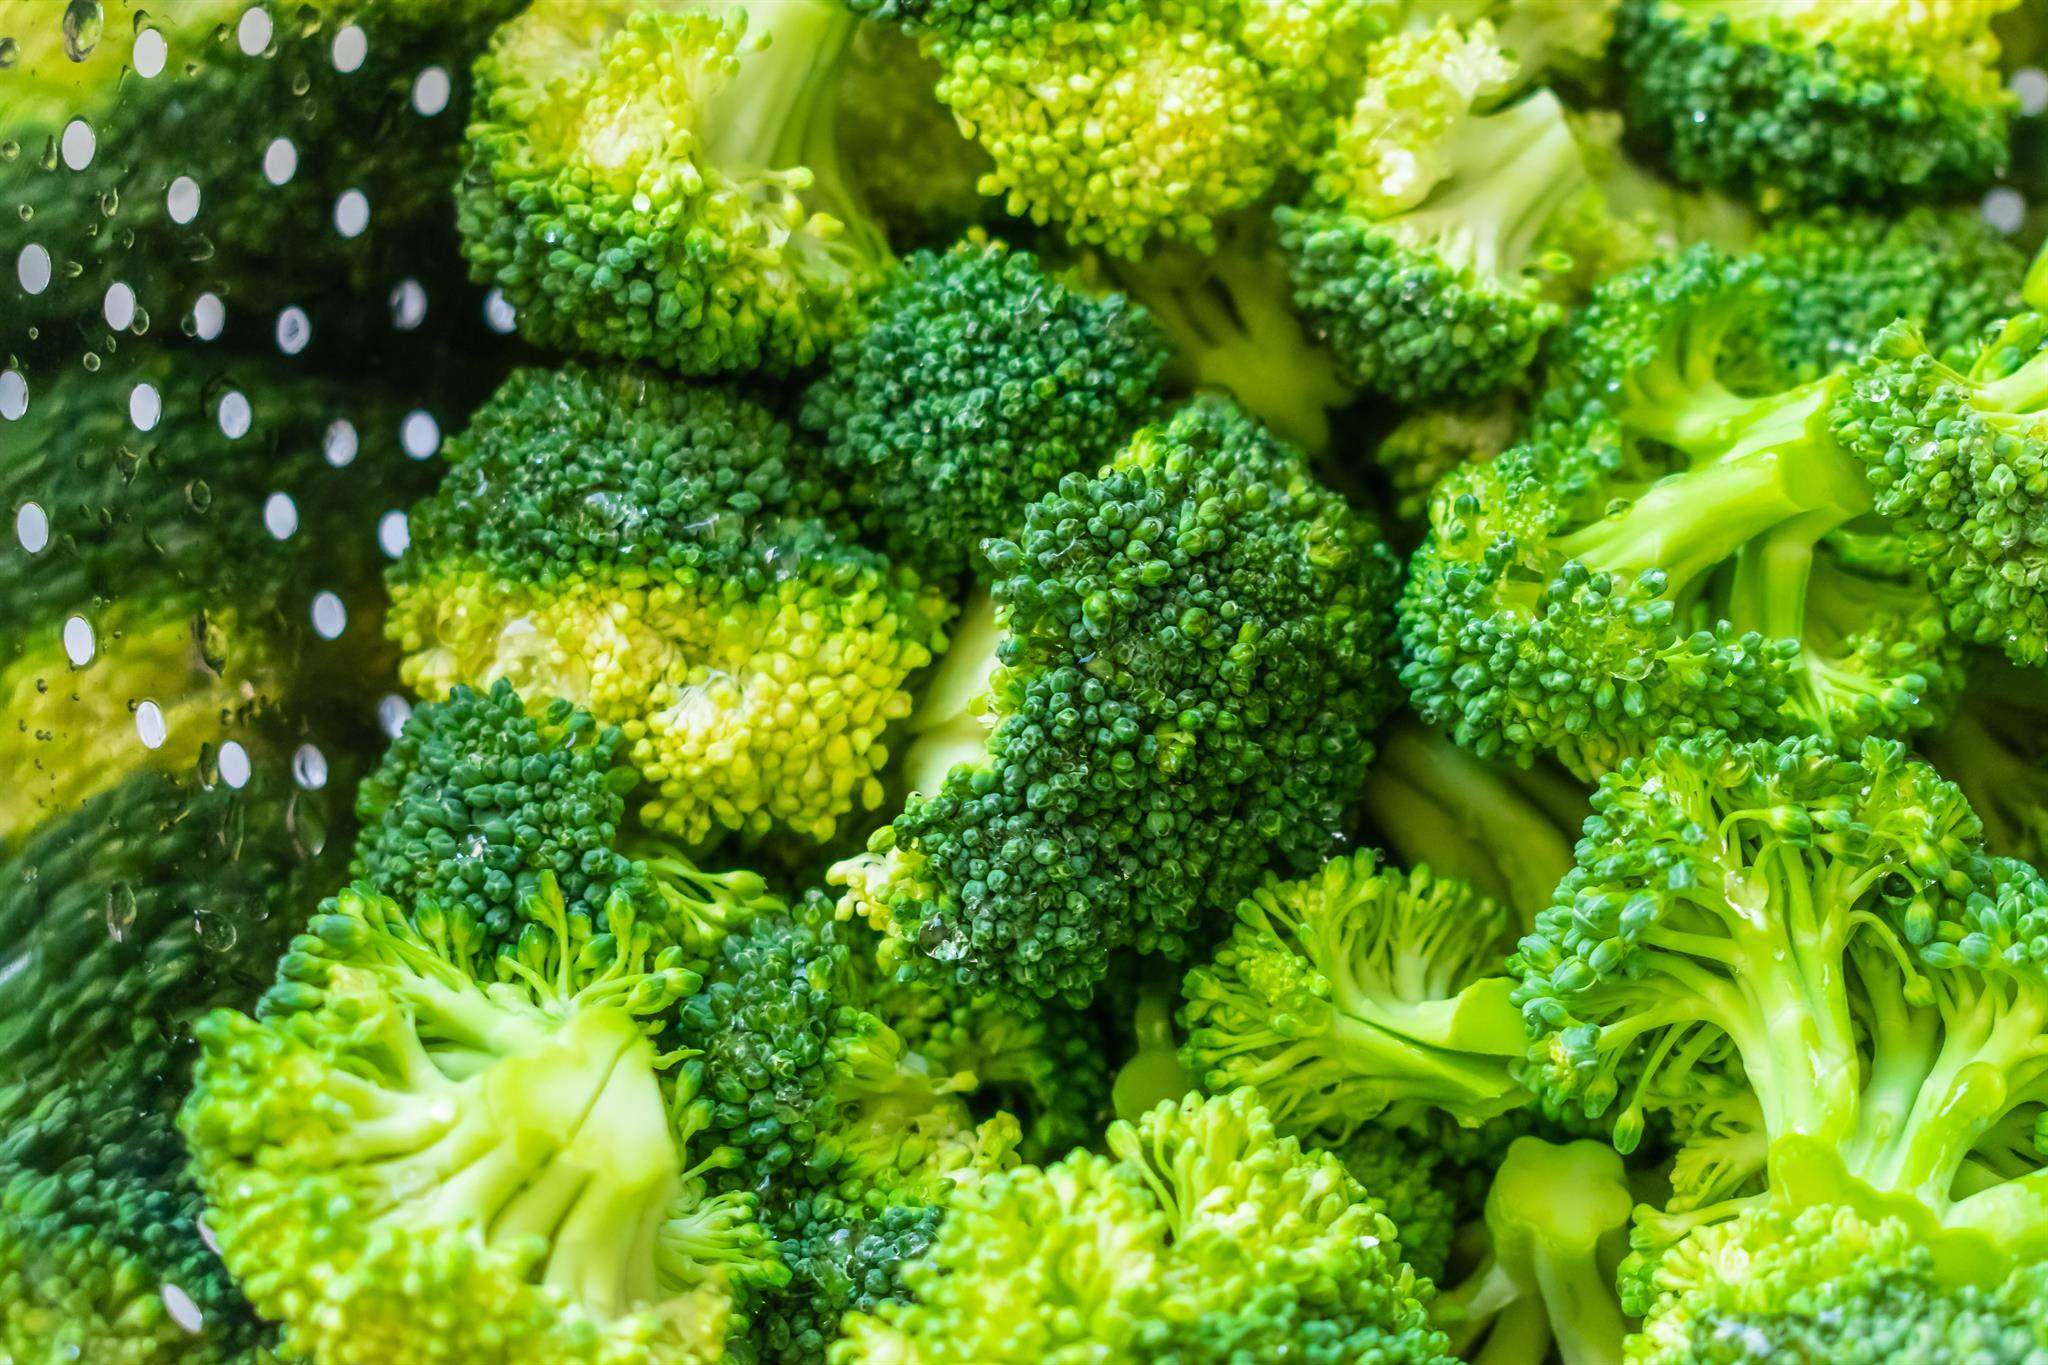 超級食材青花菜健康效果多 清洗調理2重點幫助保留更多營養 醫聯網